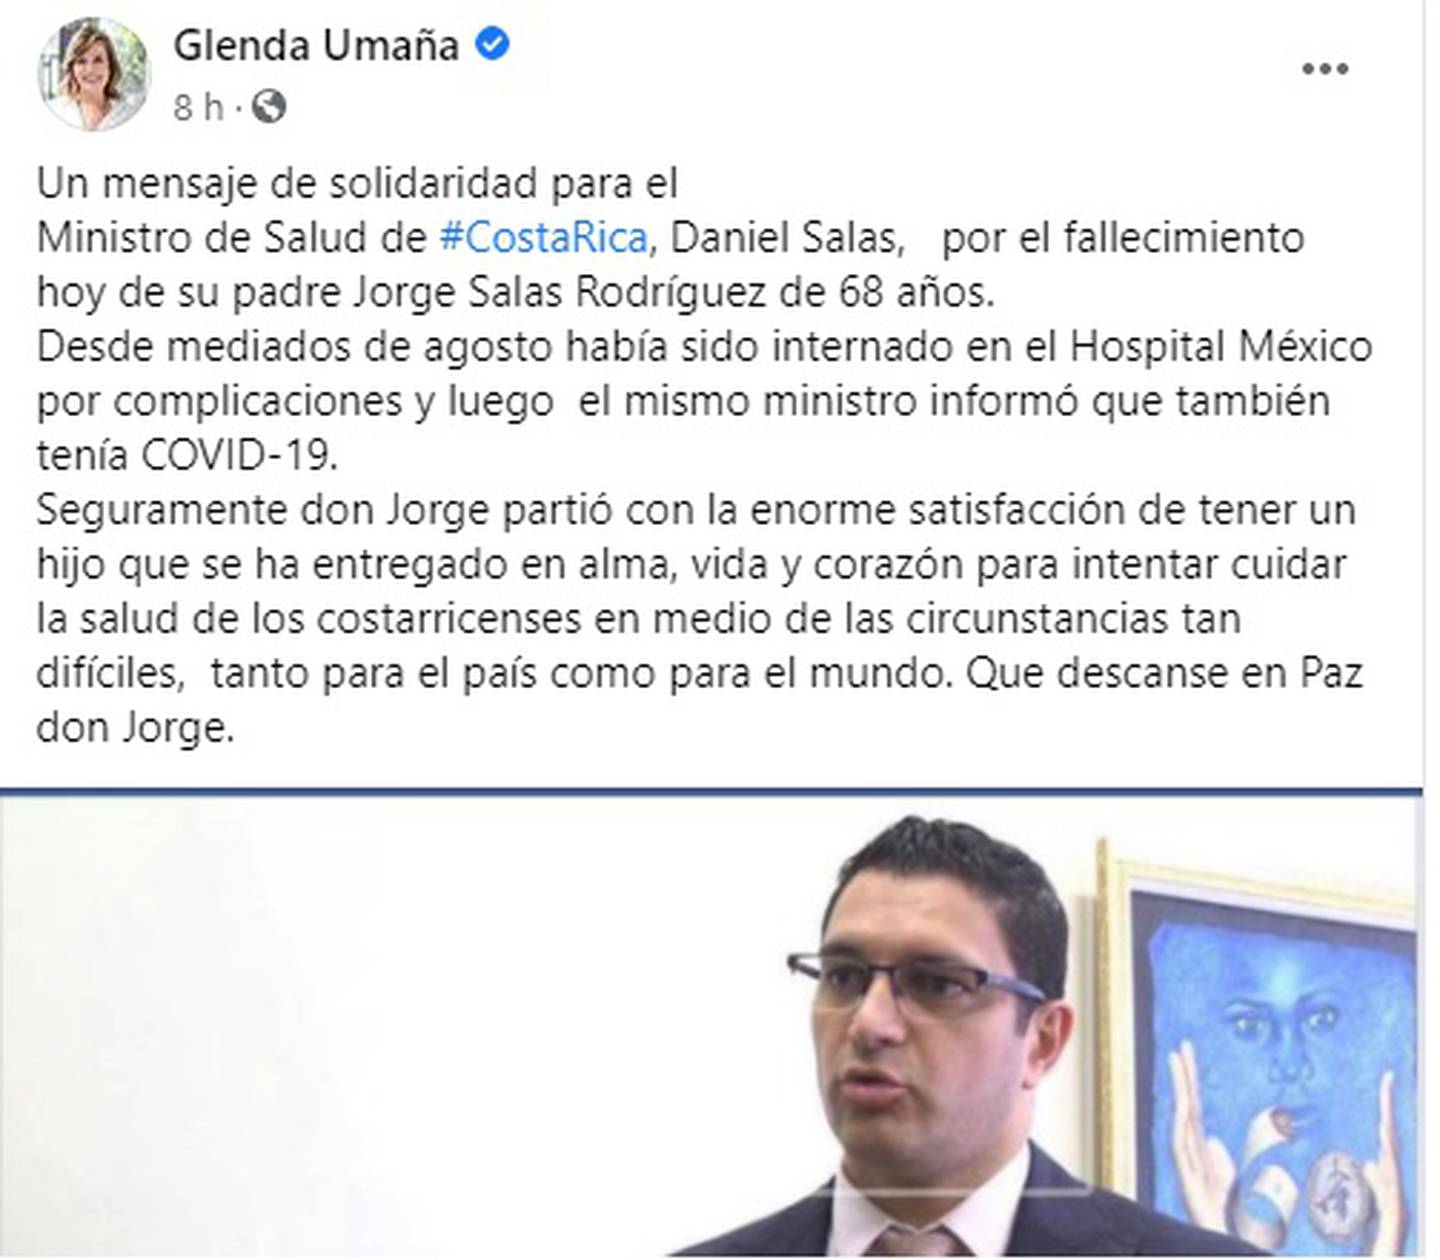 La periodista Glenda Umaña publicó en Facebook sobre  el fallecimiento de don Jorge Eduardo Salas, papá del ministro de Salud, Daniel  Salas